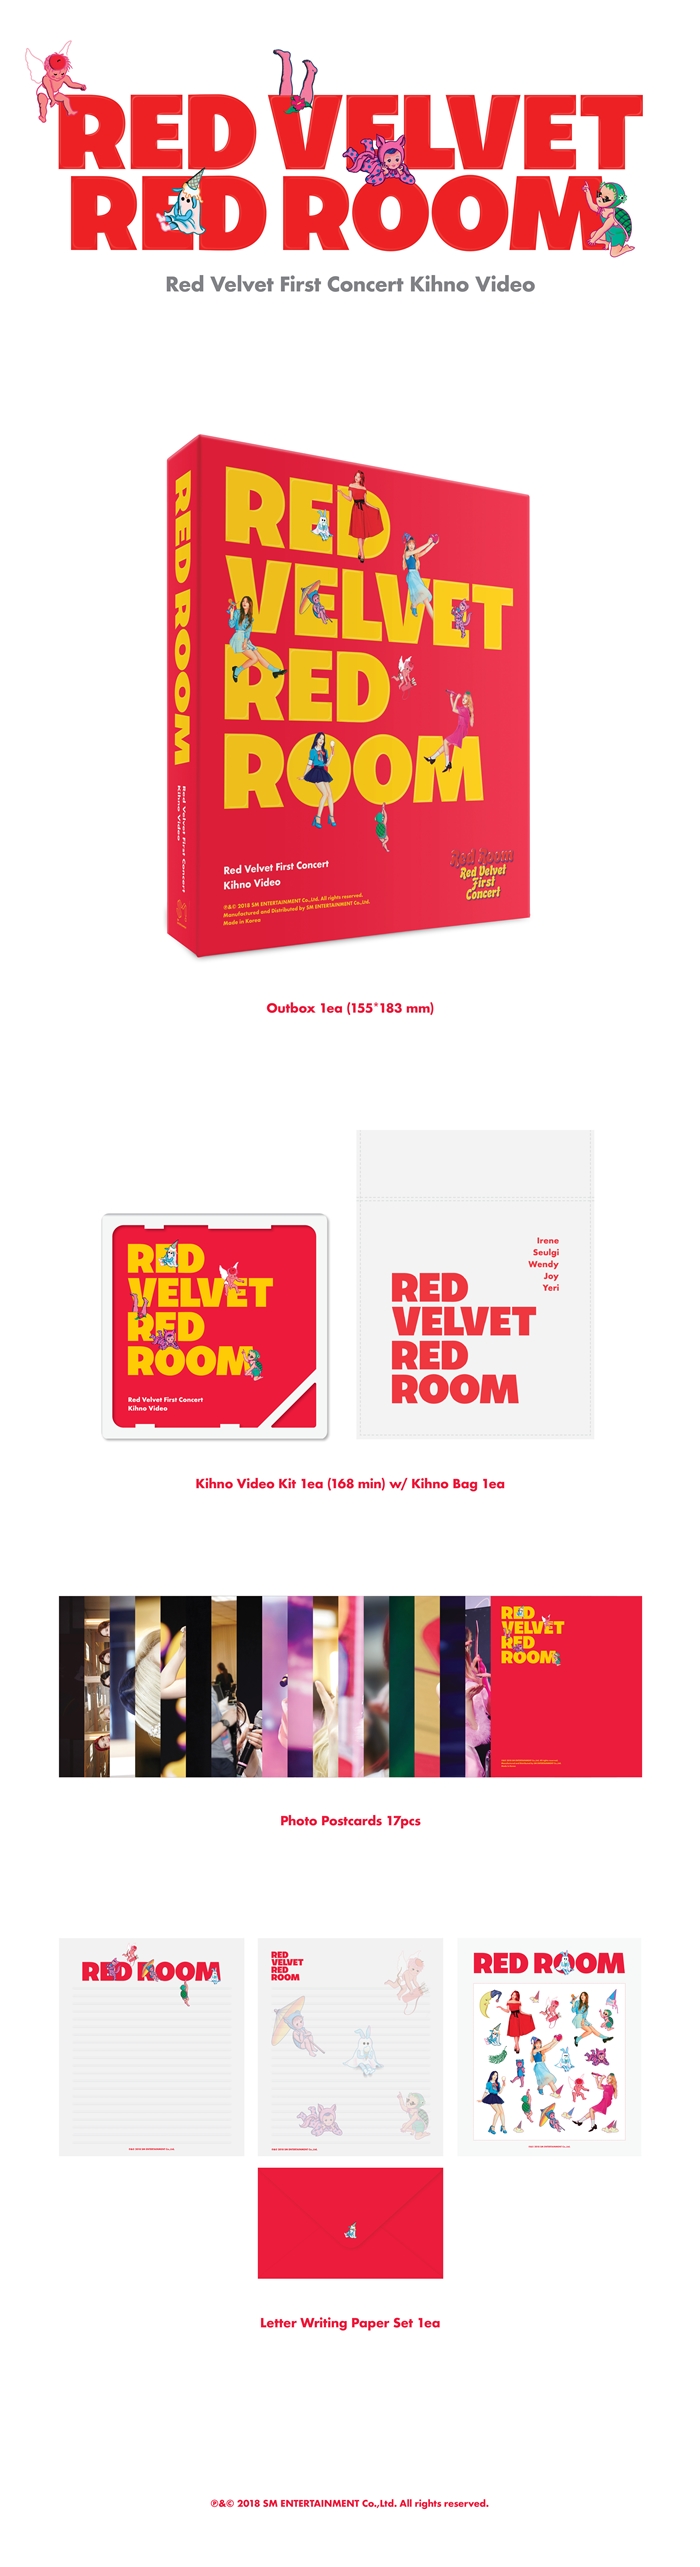 Red Velvet  1st concert Red Room Kihno Video